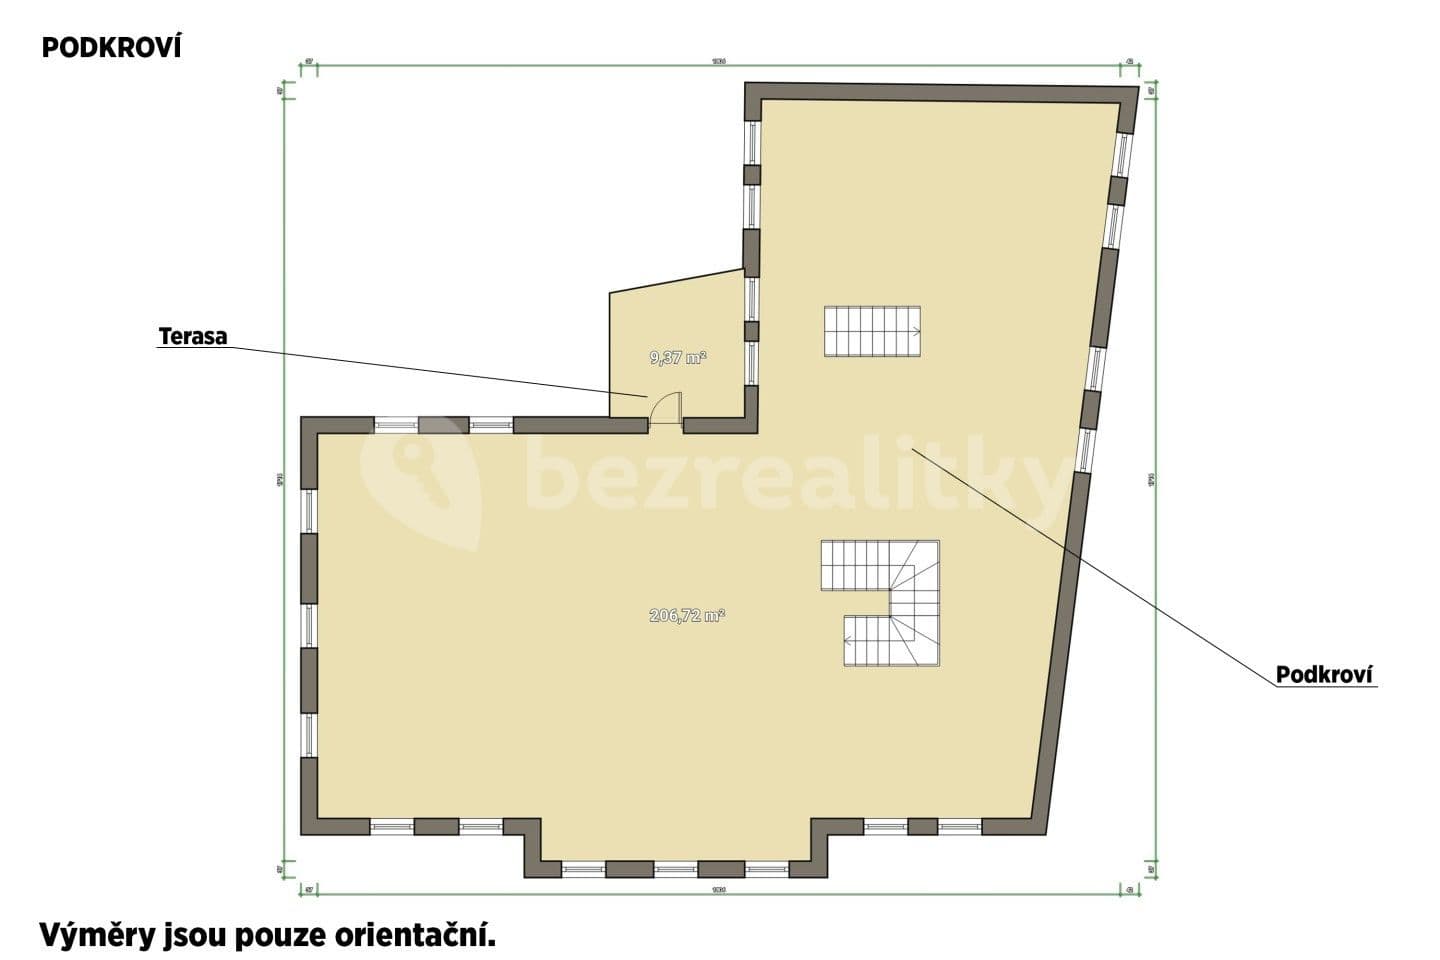 Predaj domu 450 m², pozemek 4.770 m², Hostouň, Plzeňský kraj